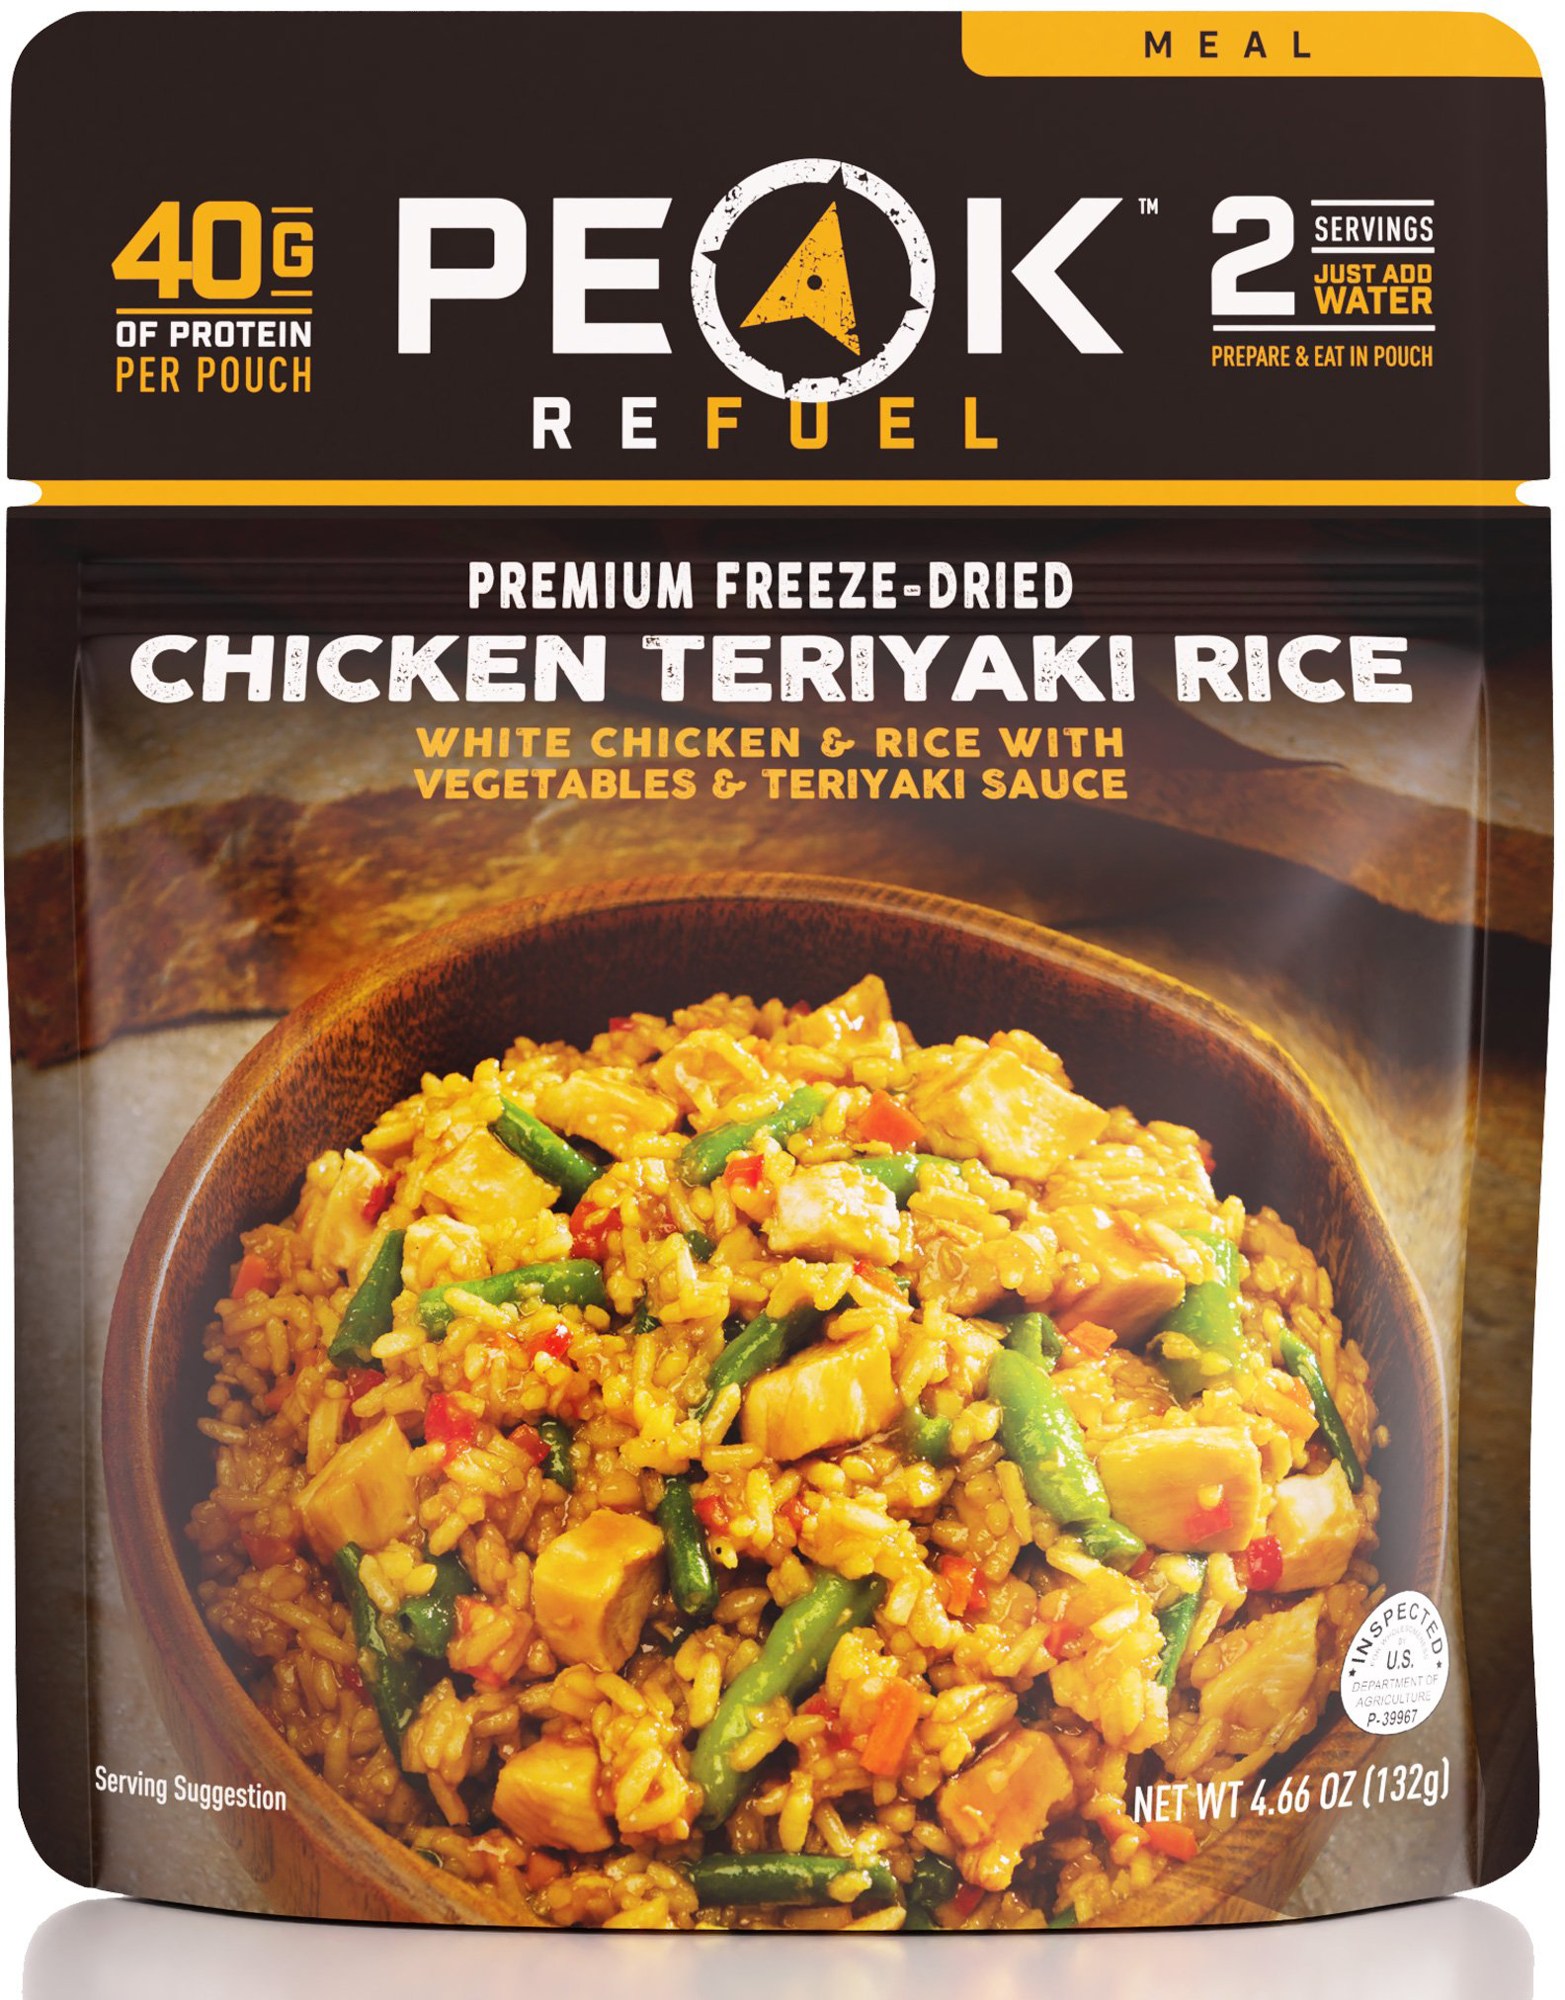 Курица с рисом Терияки – 2 порции PEAK REFUEL ролл с курицей терияки классический